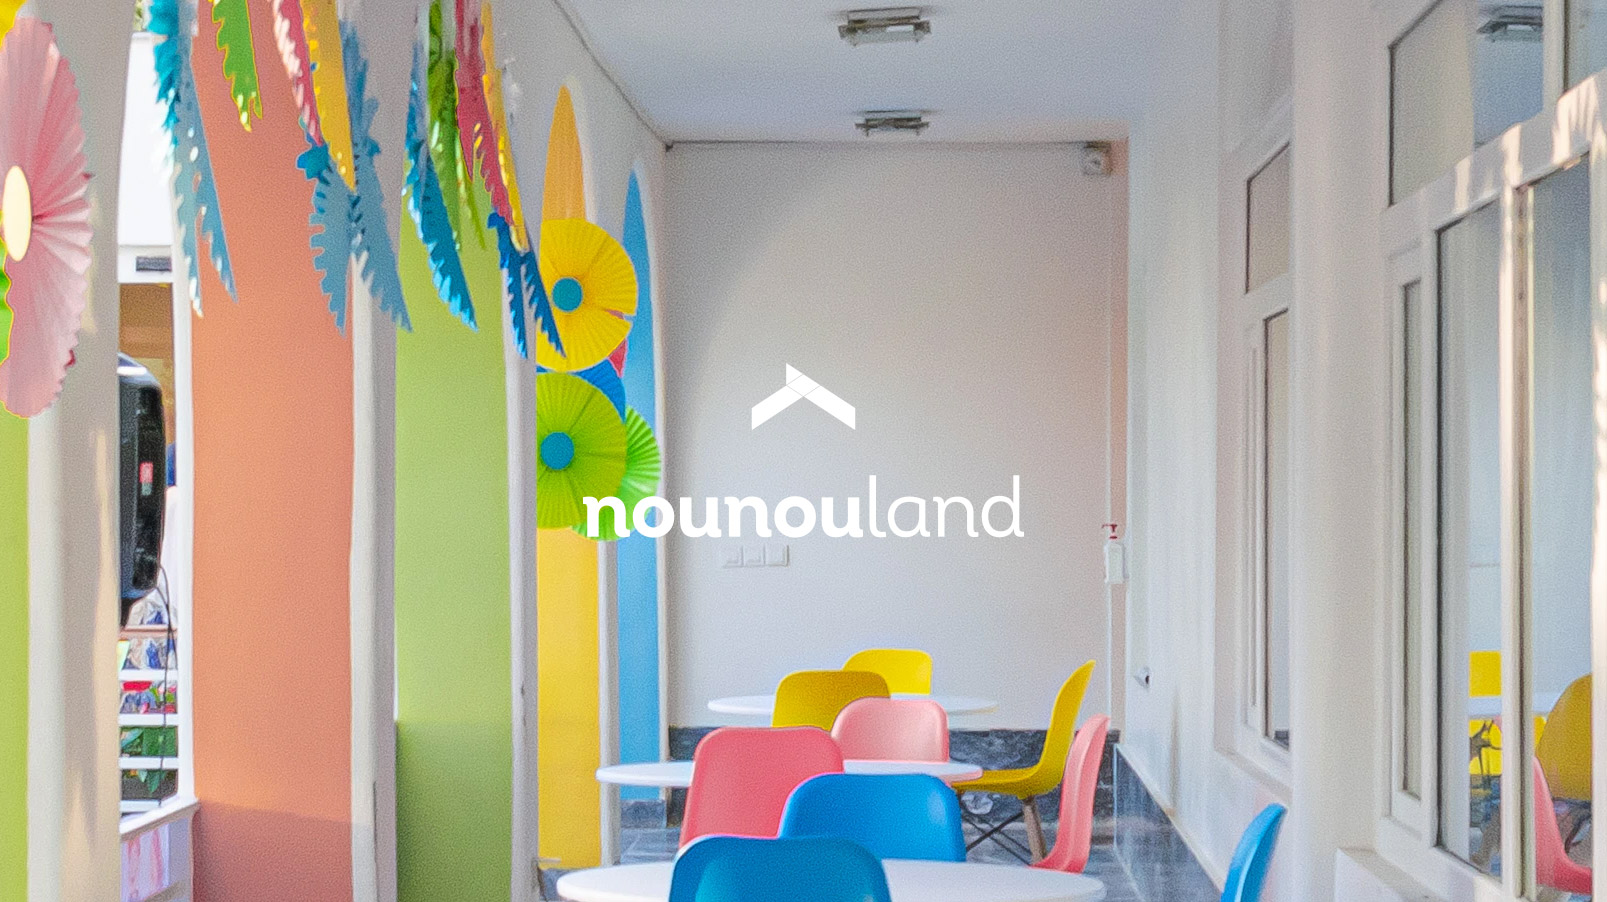 Logo Nounouland fond photographique